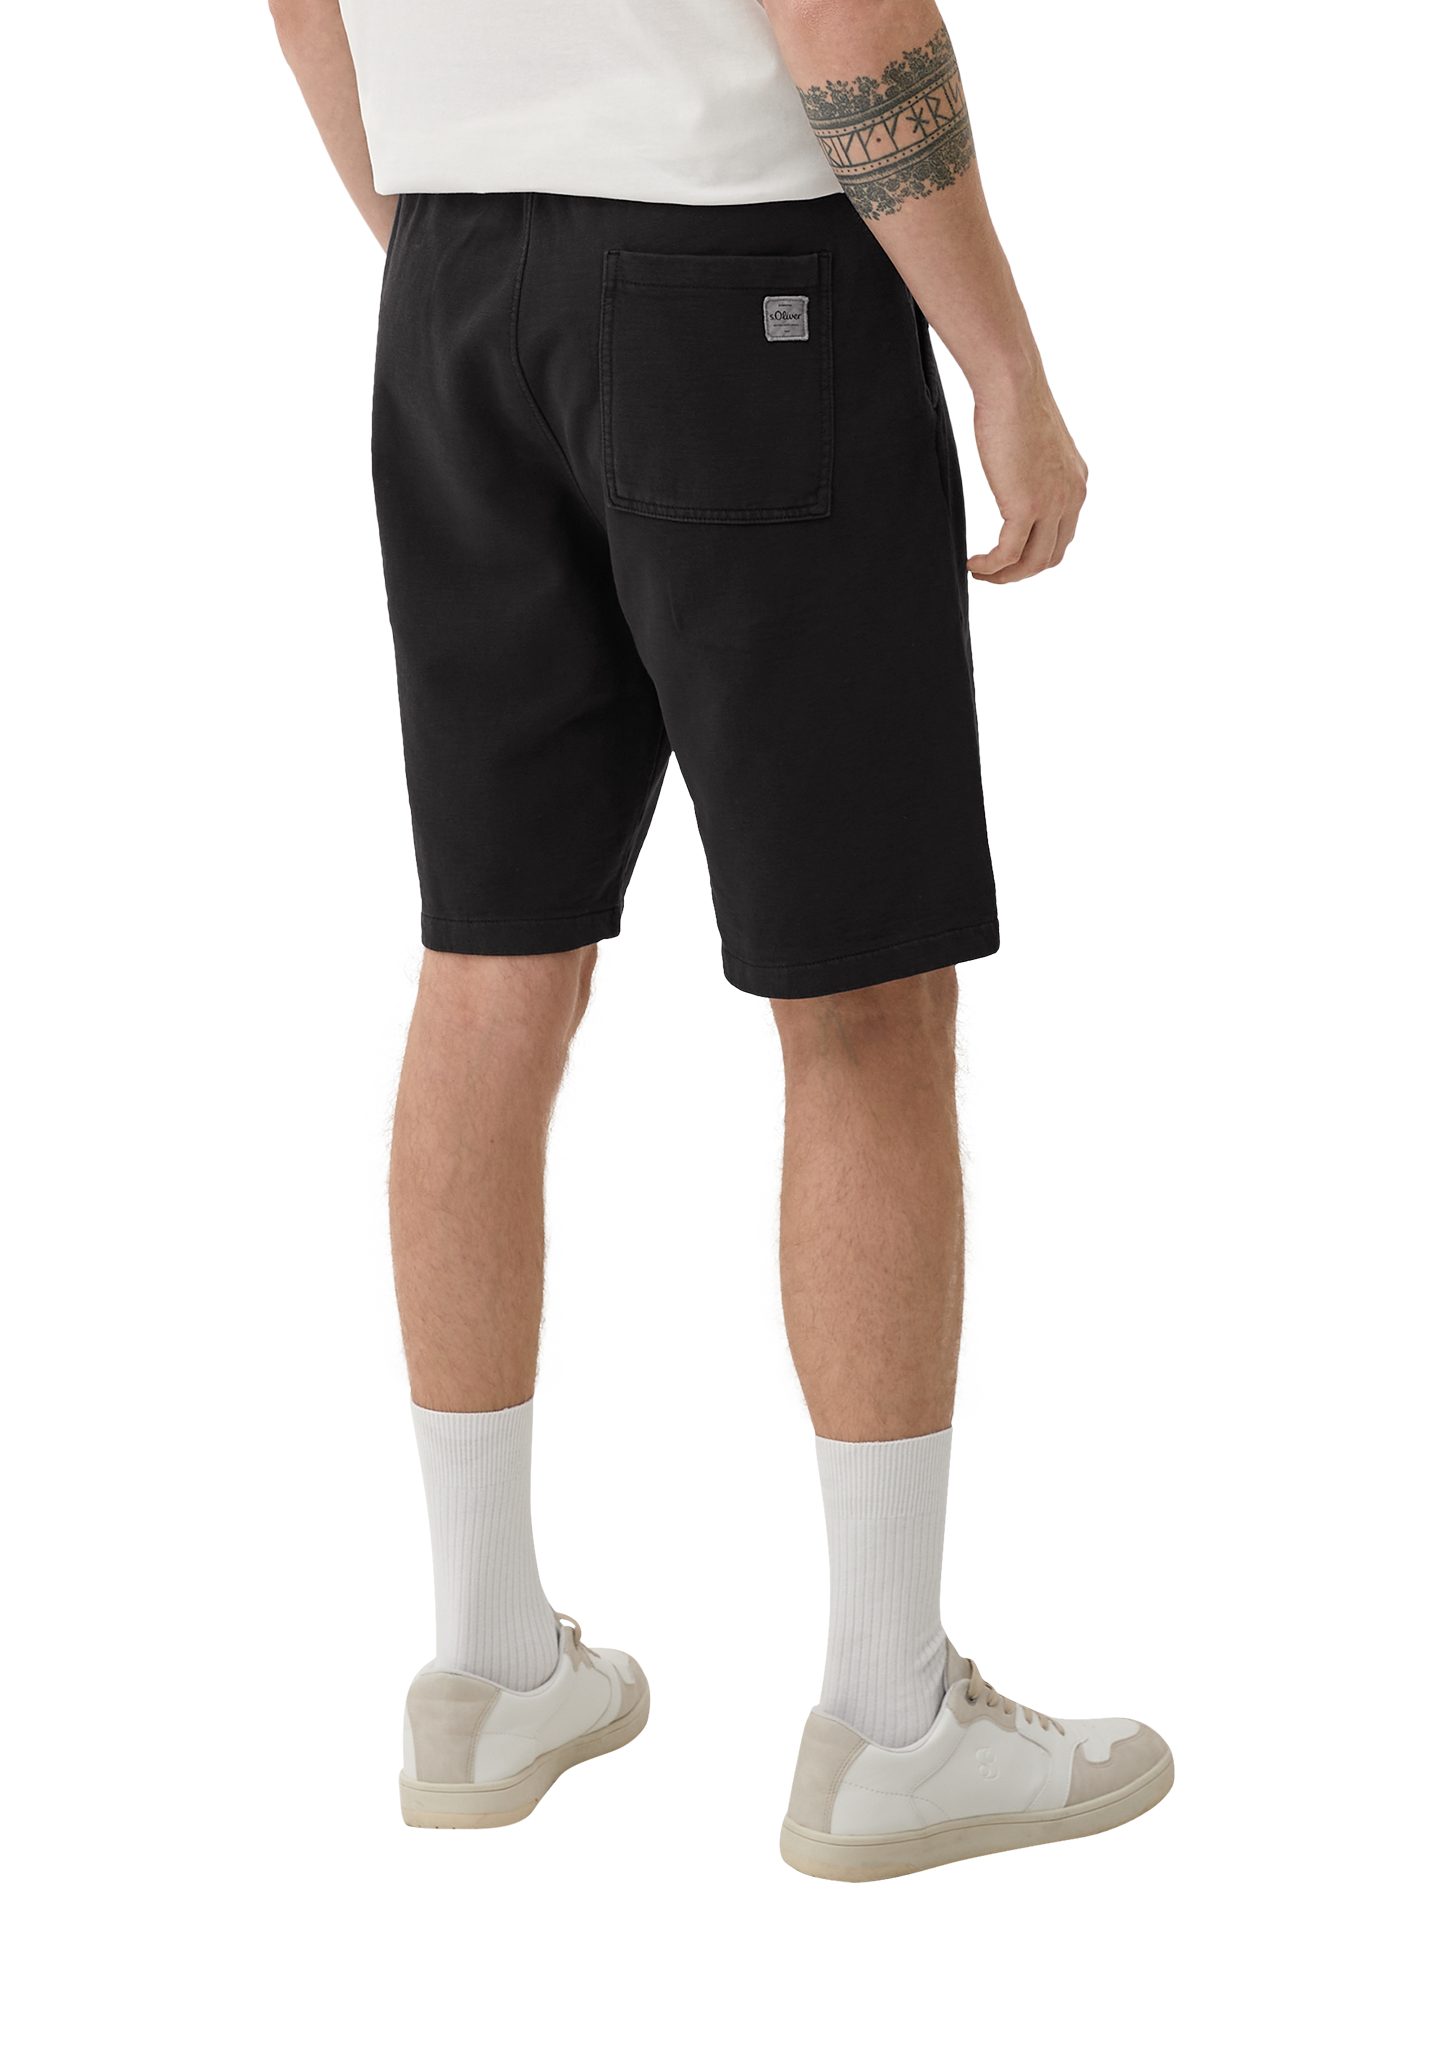 s.Oliver Bermudas Relaxed: Sweatpants mit Durchzugkordel, Label-Patch Dye, Elastikbund schwarz Garment